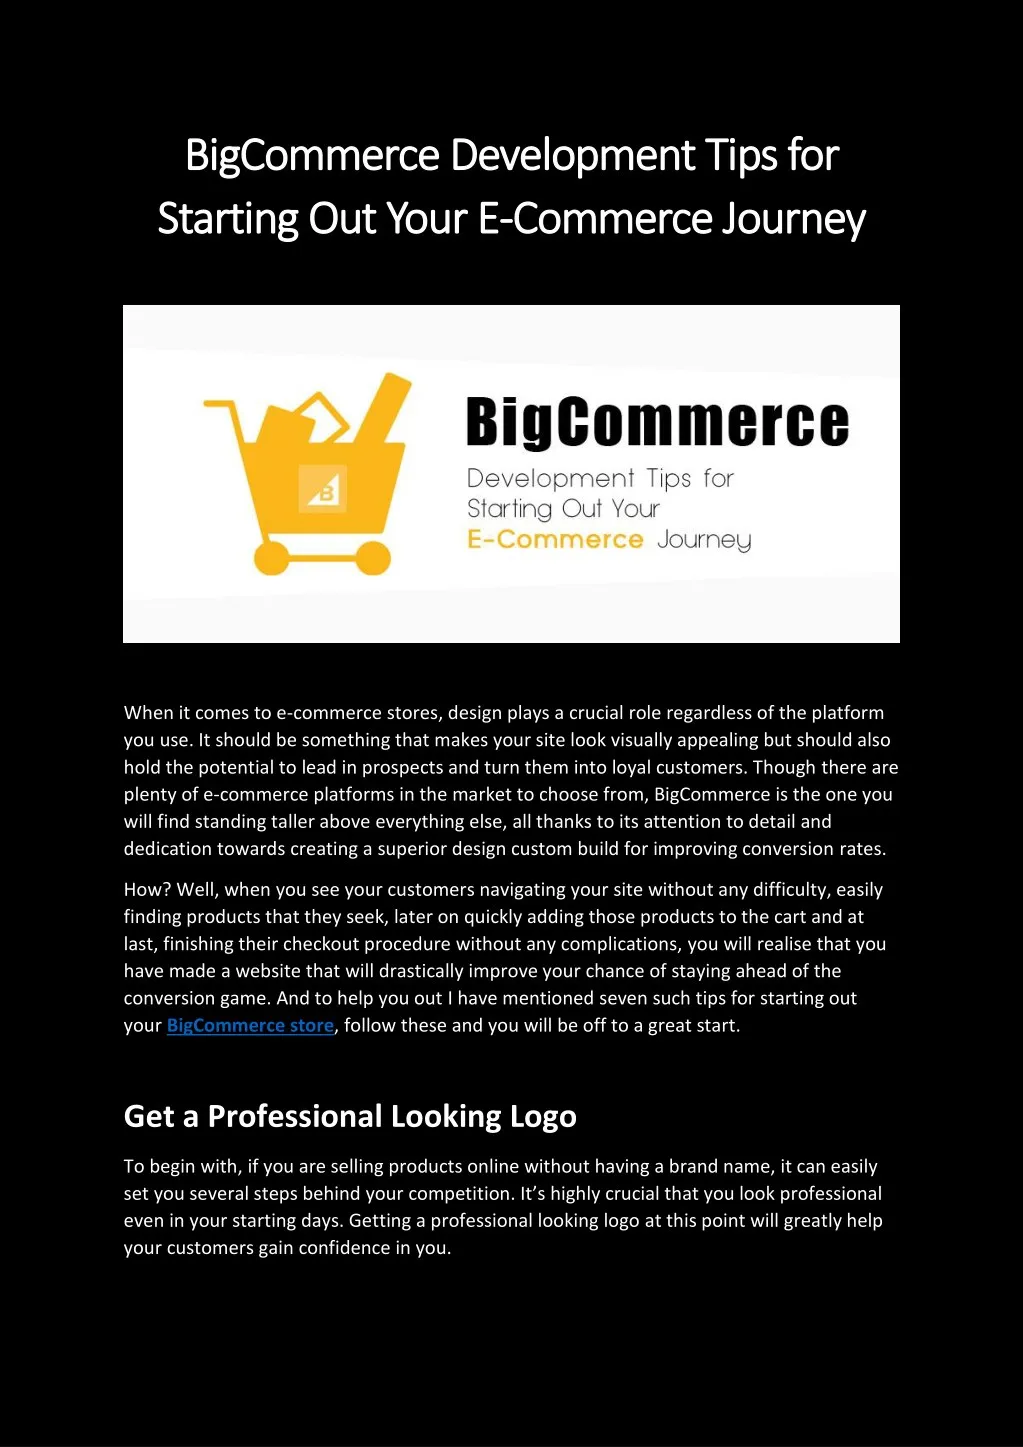 bigcommerce development tips for bigcommerce